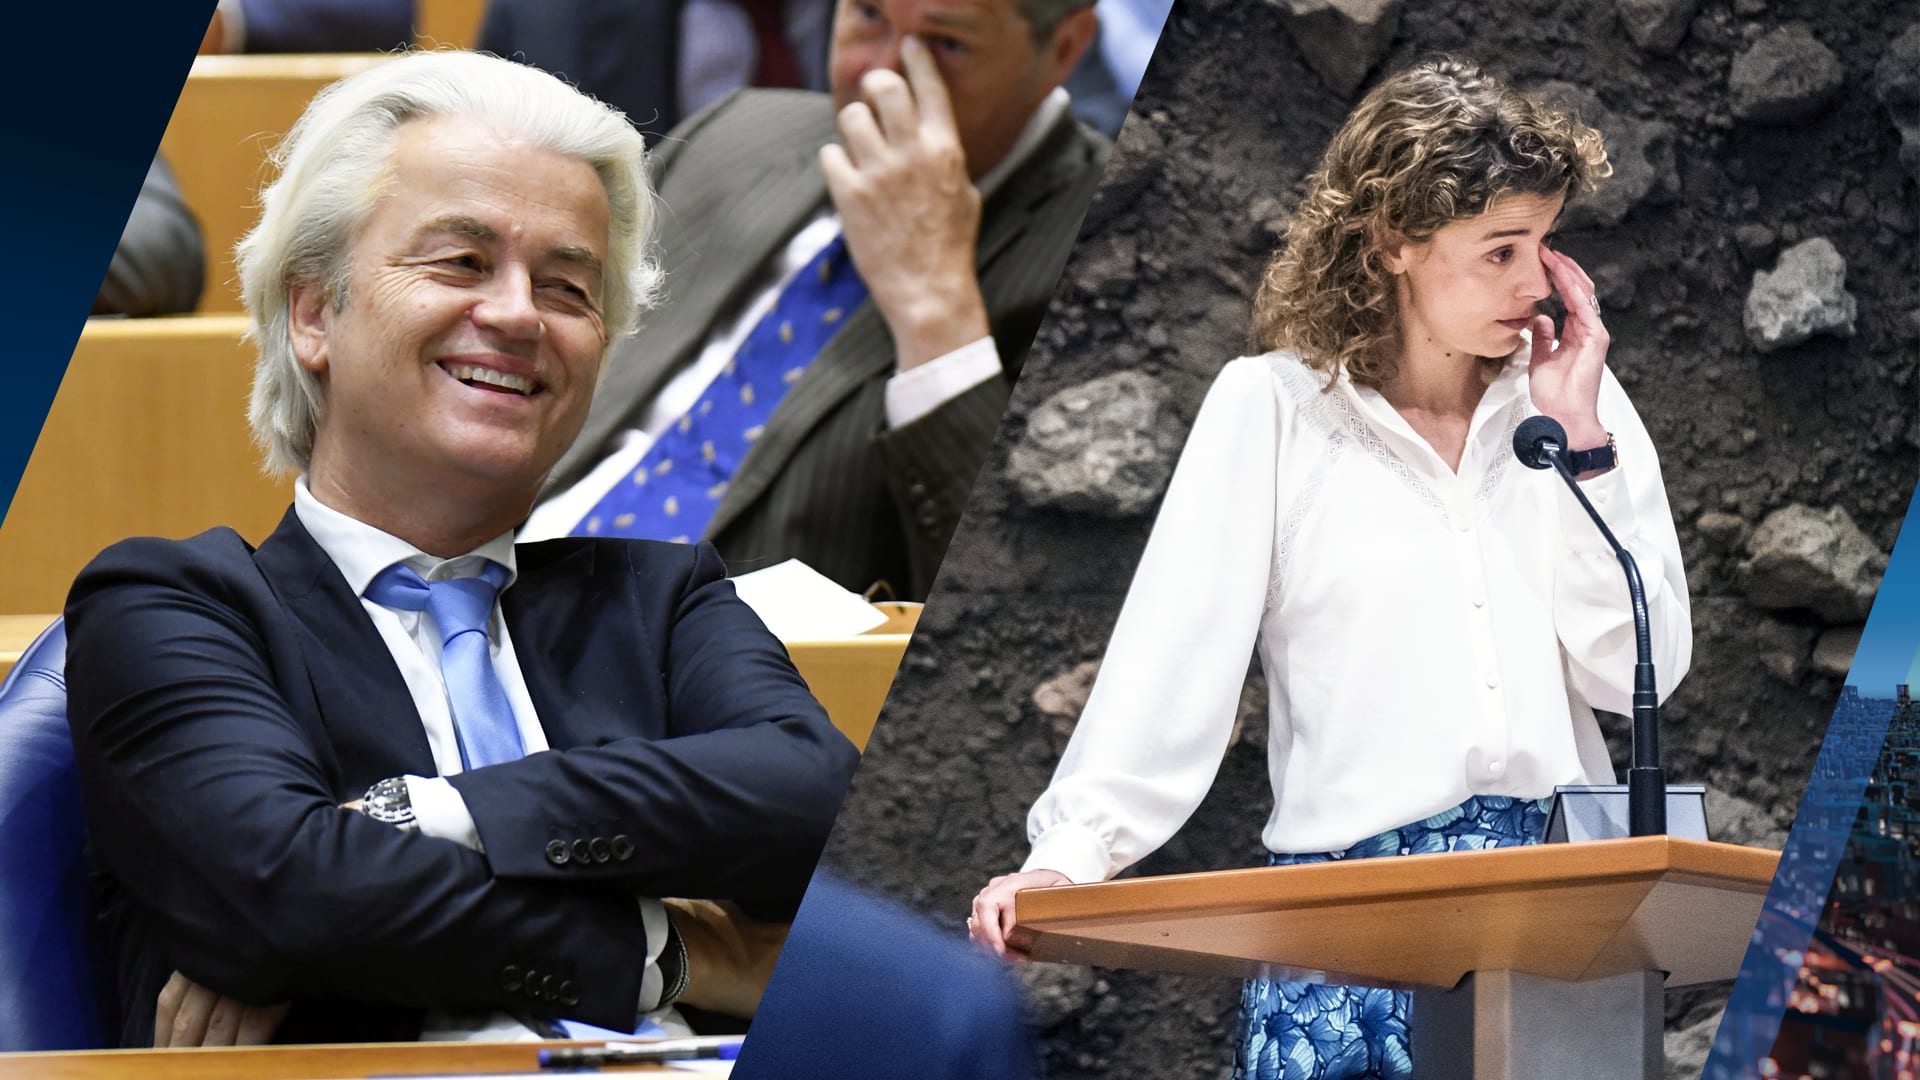 VVD-fractievoorzitter Hermans bijna in tranen door aanval Wilders: 'Tassendrager van Rutte'